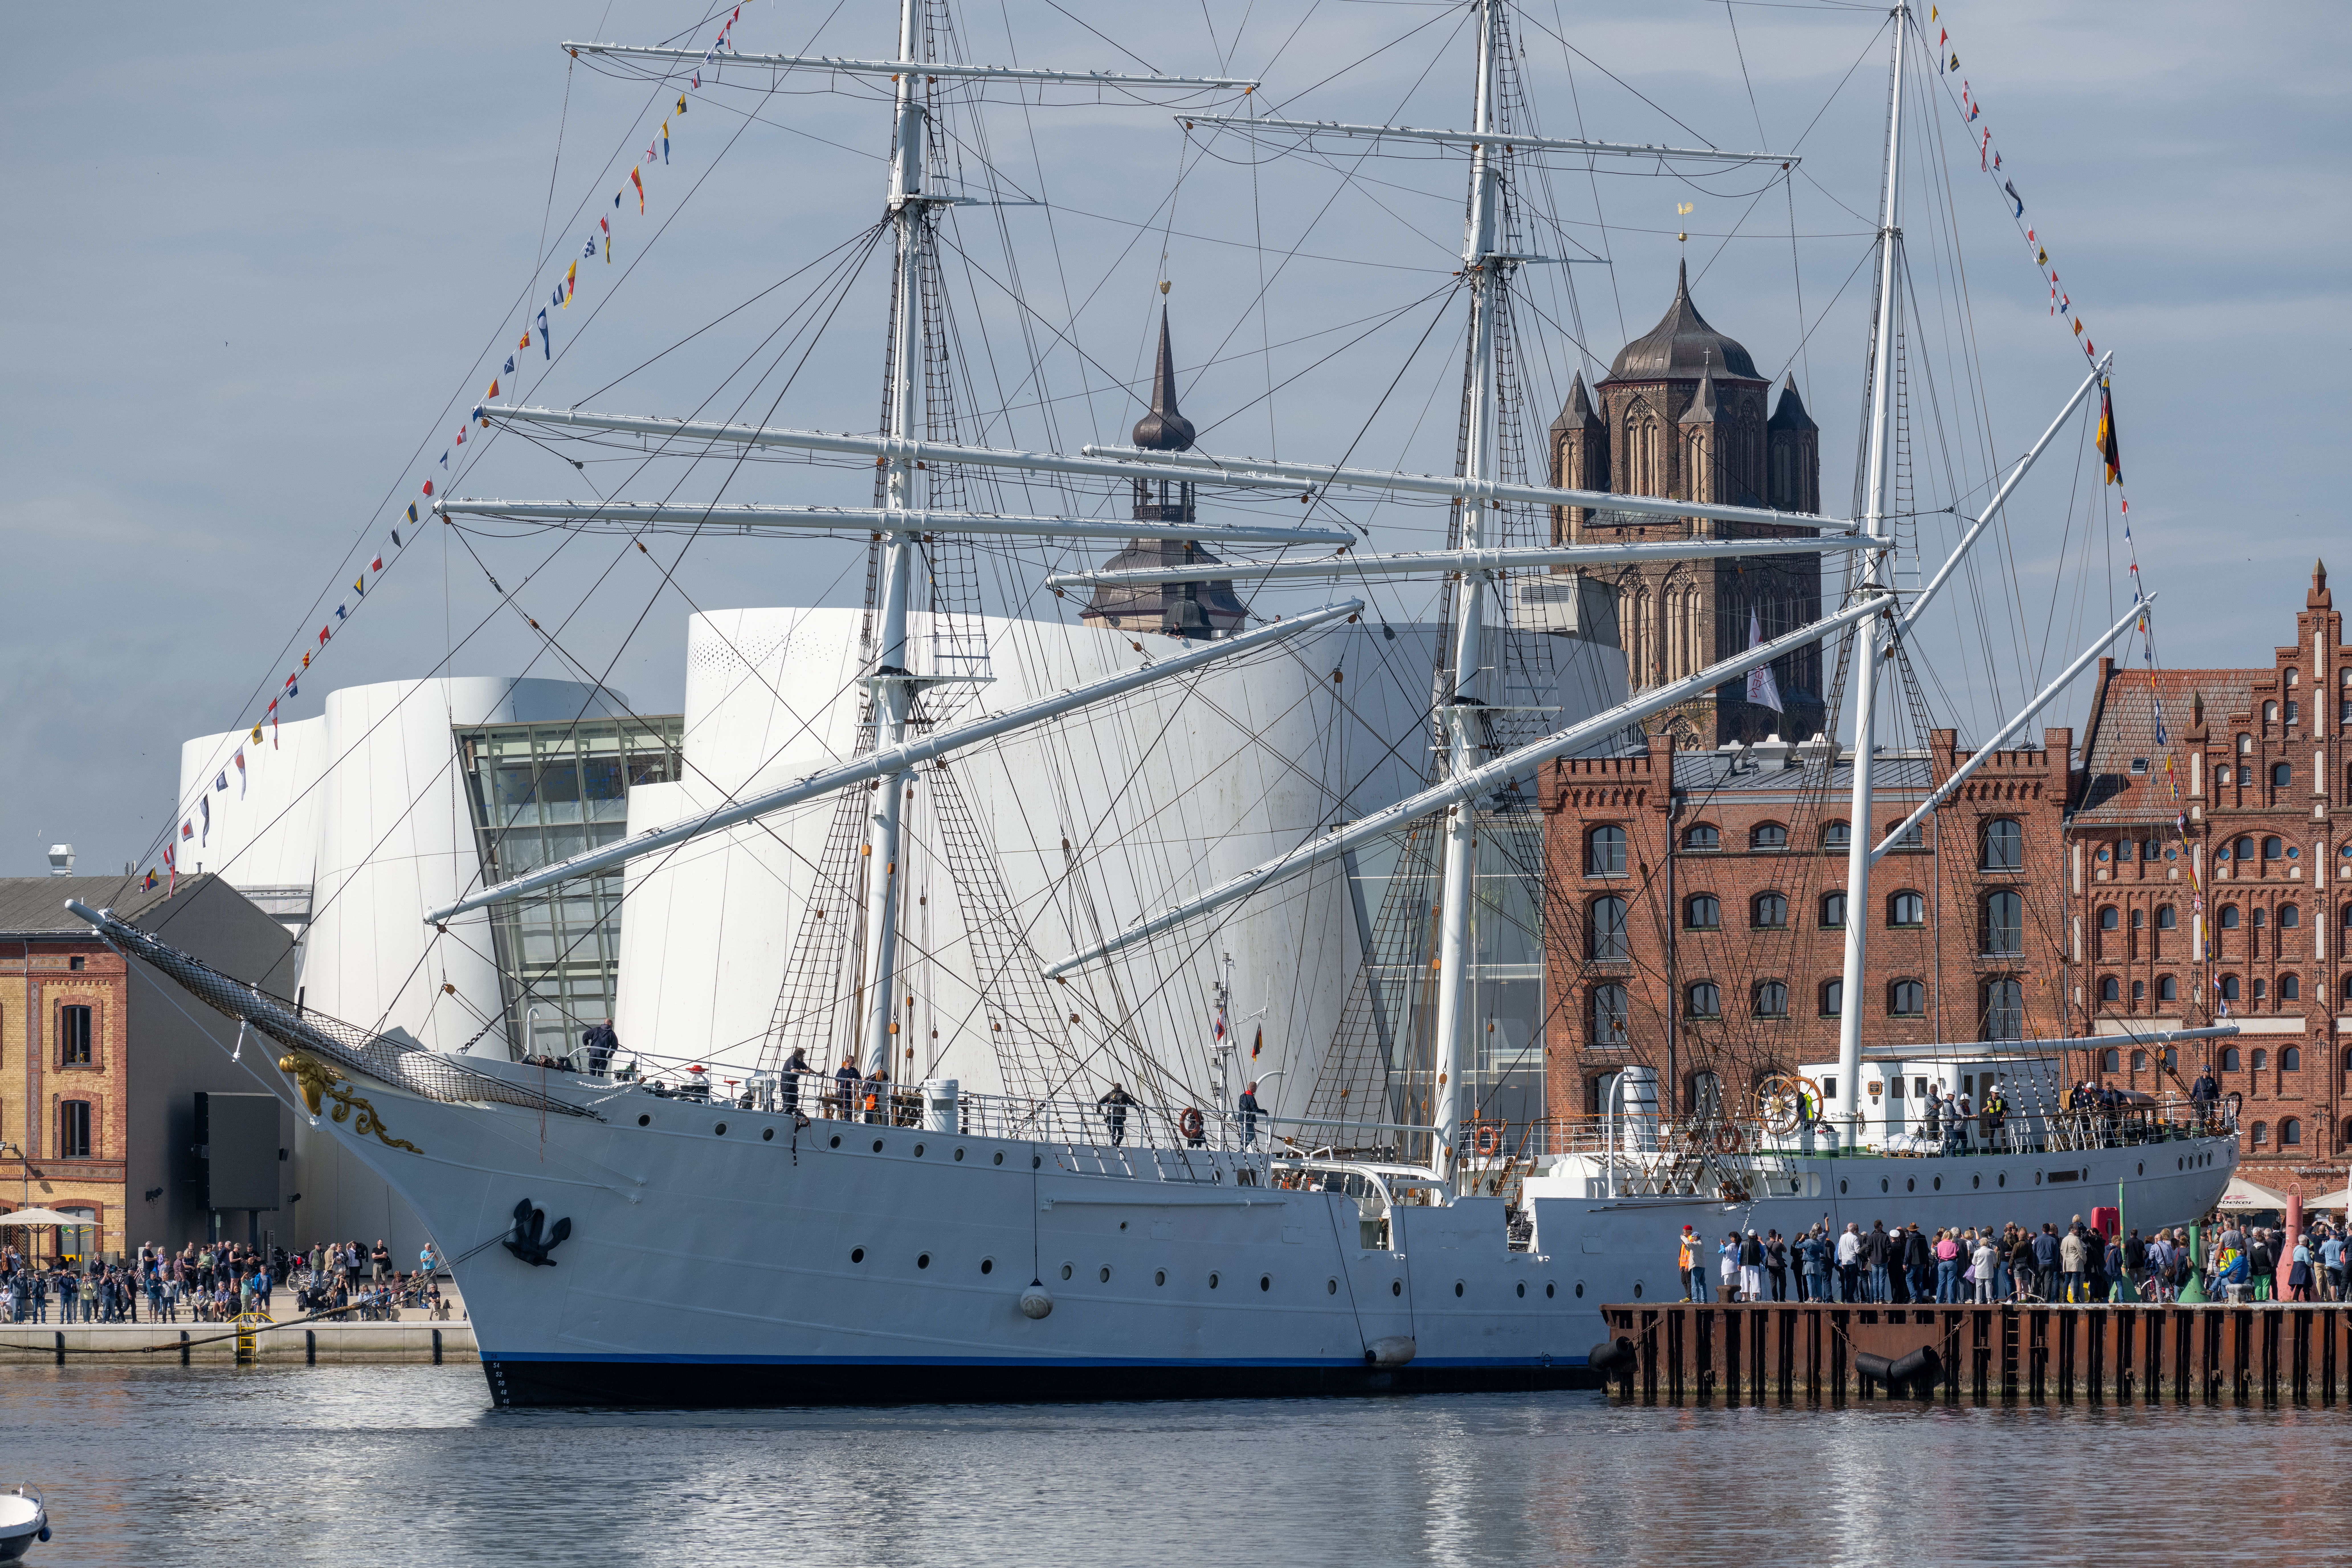 Das Segelschiff „Gorch Fock 1“ wird von Schleppern in den Stadthafen gebracht. Nach umfangreiche Reparaturen auf der Werft an dem 90-jährigen Segler soll das Schiff zukünftig als Museumsschiff im Hafen der Stadt liegen.